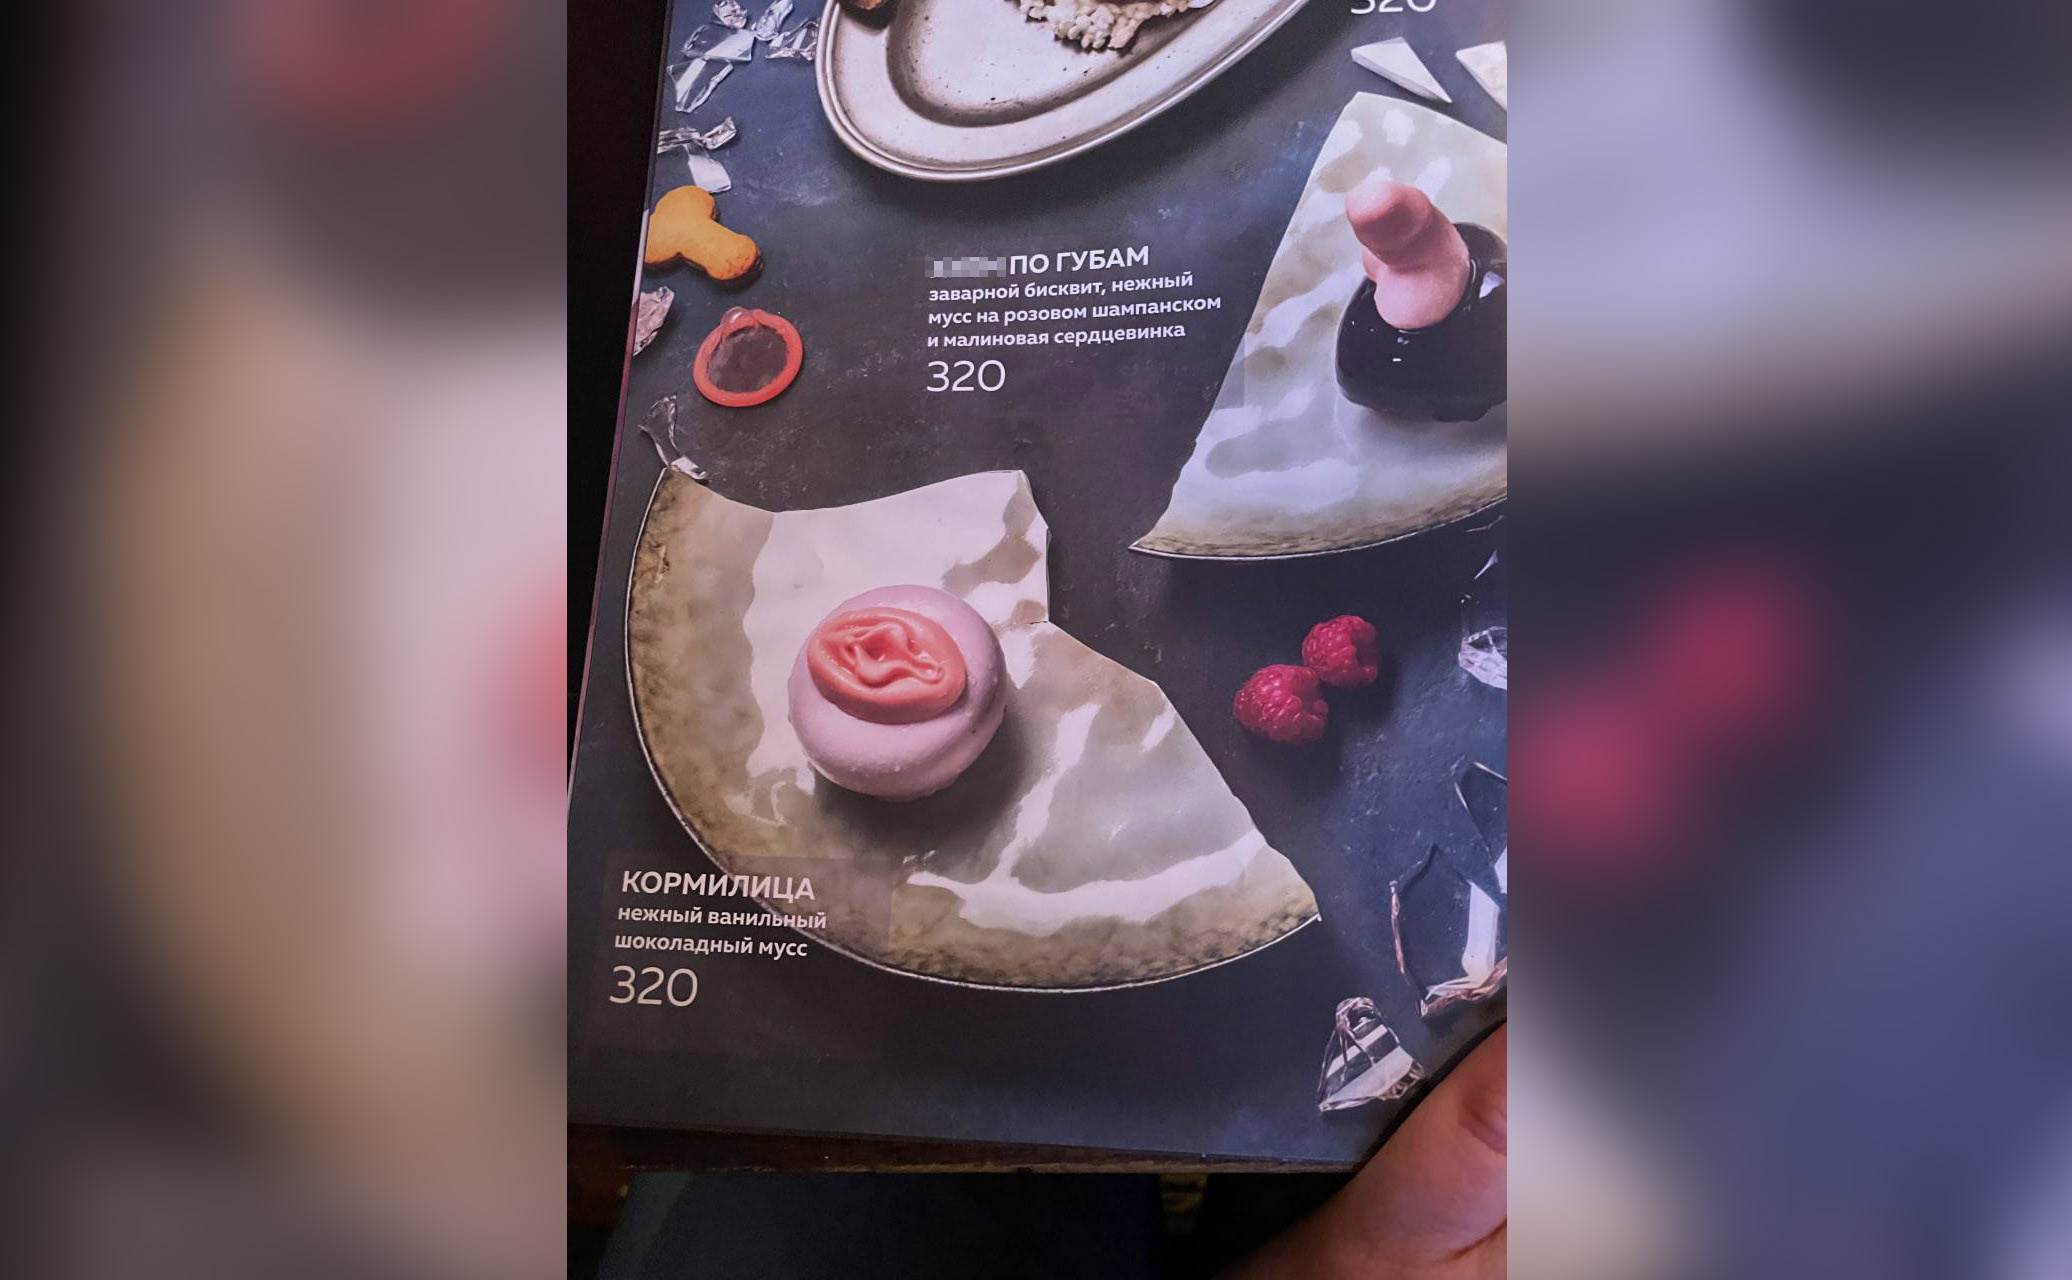 В баре на десерт предлагают отведать заварной бисквит с нежным муссом, выполненный в виде пениса, и "Кормилицу" — мусс в форме вульвы. Фото © Telegram / MDK